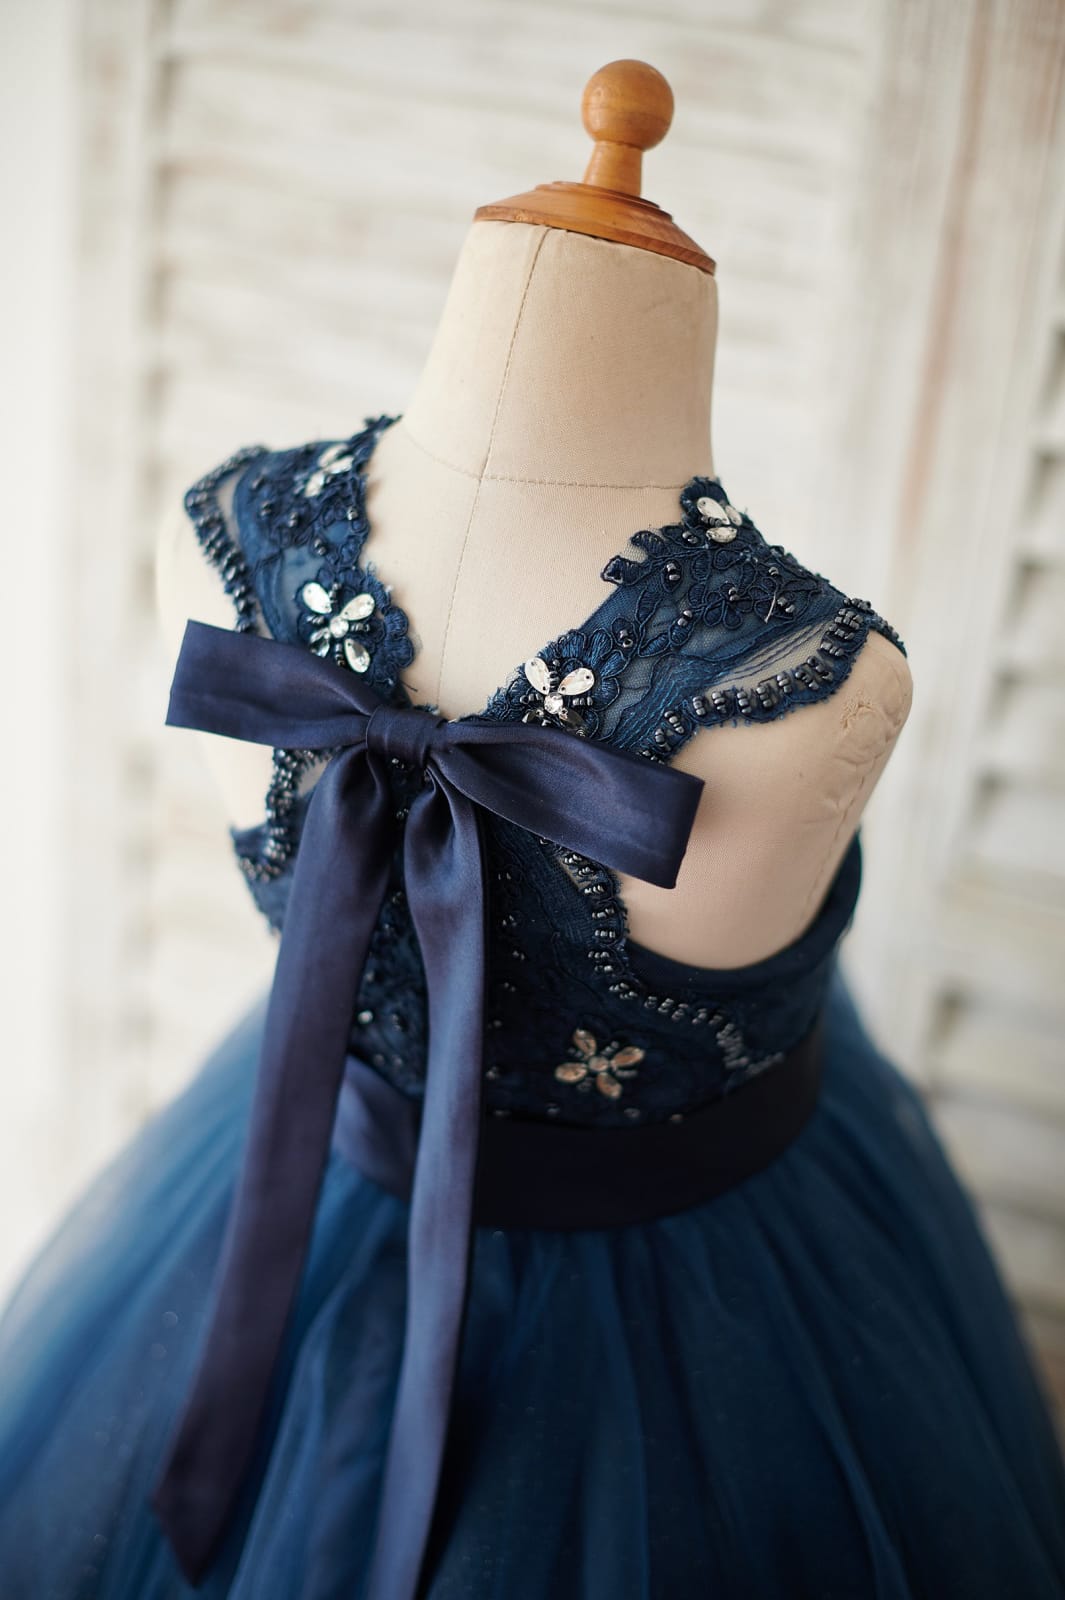 Navy Blue Lace Glitter Tulle Beaded Cross Back Wedding Flower Girl Dress